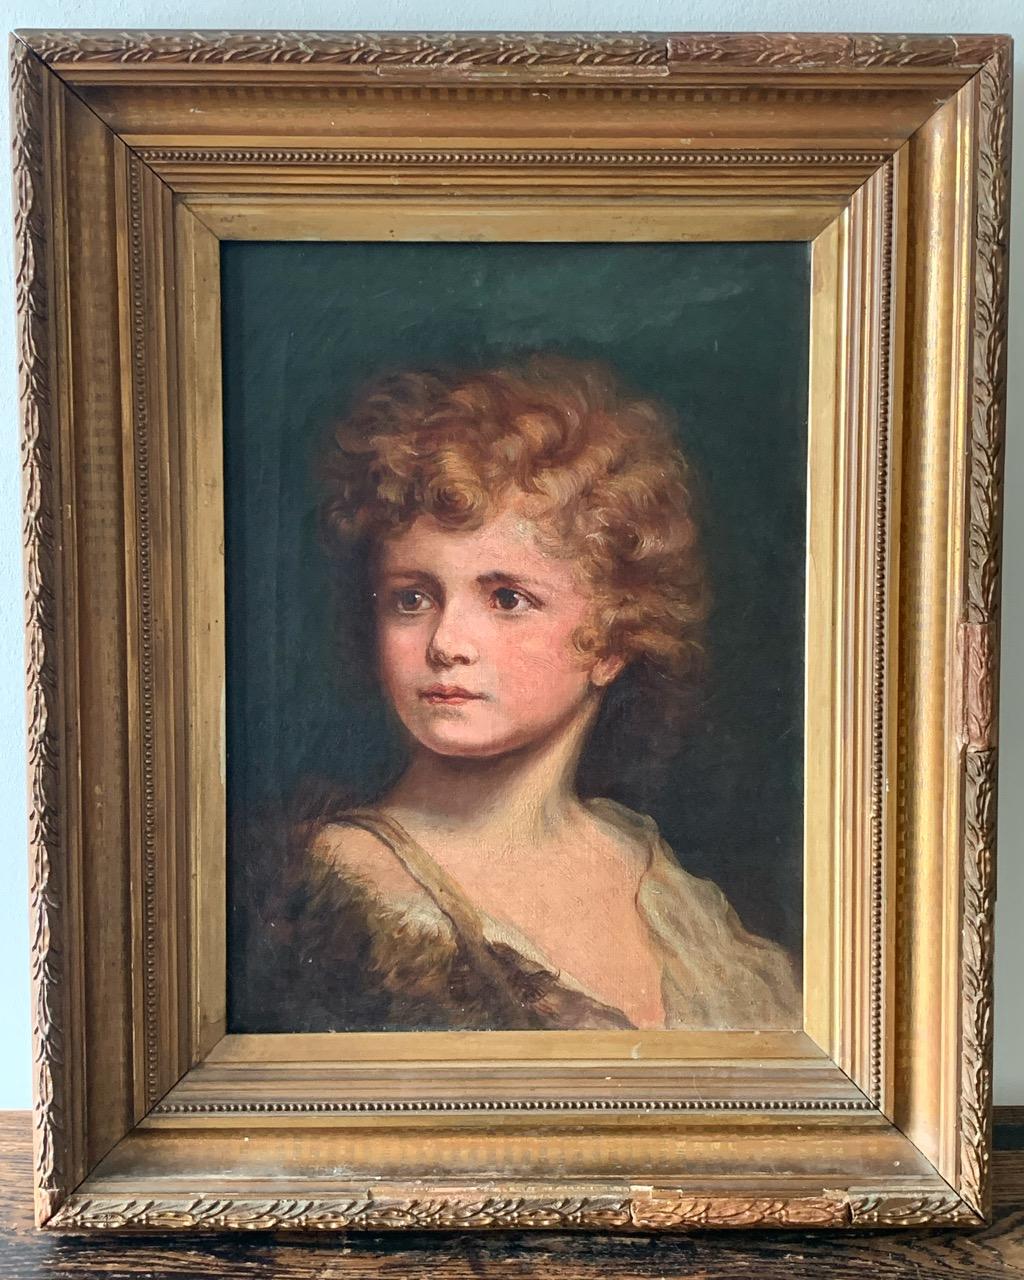 Une belle huile sur toile du 19ème siècle représentant un jeune garçon dans un cadre d'époque. Quelques réparations anciennes sur le cadre.